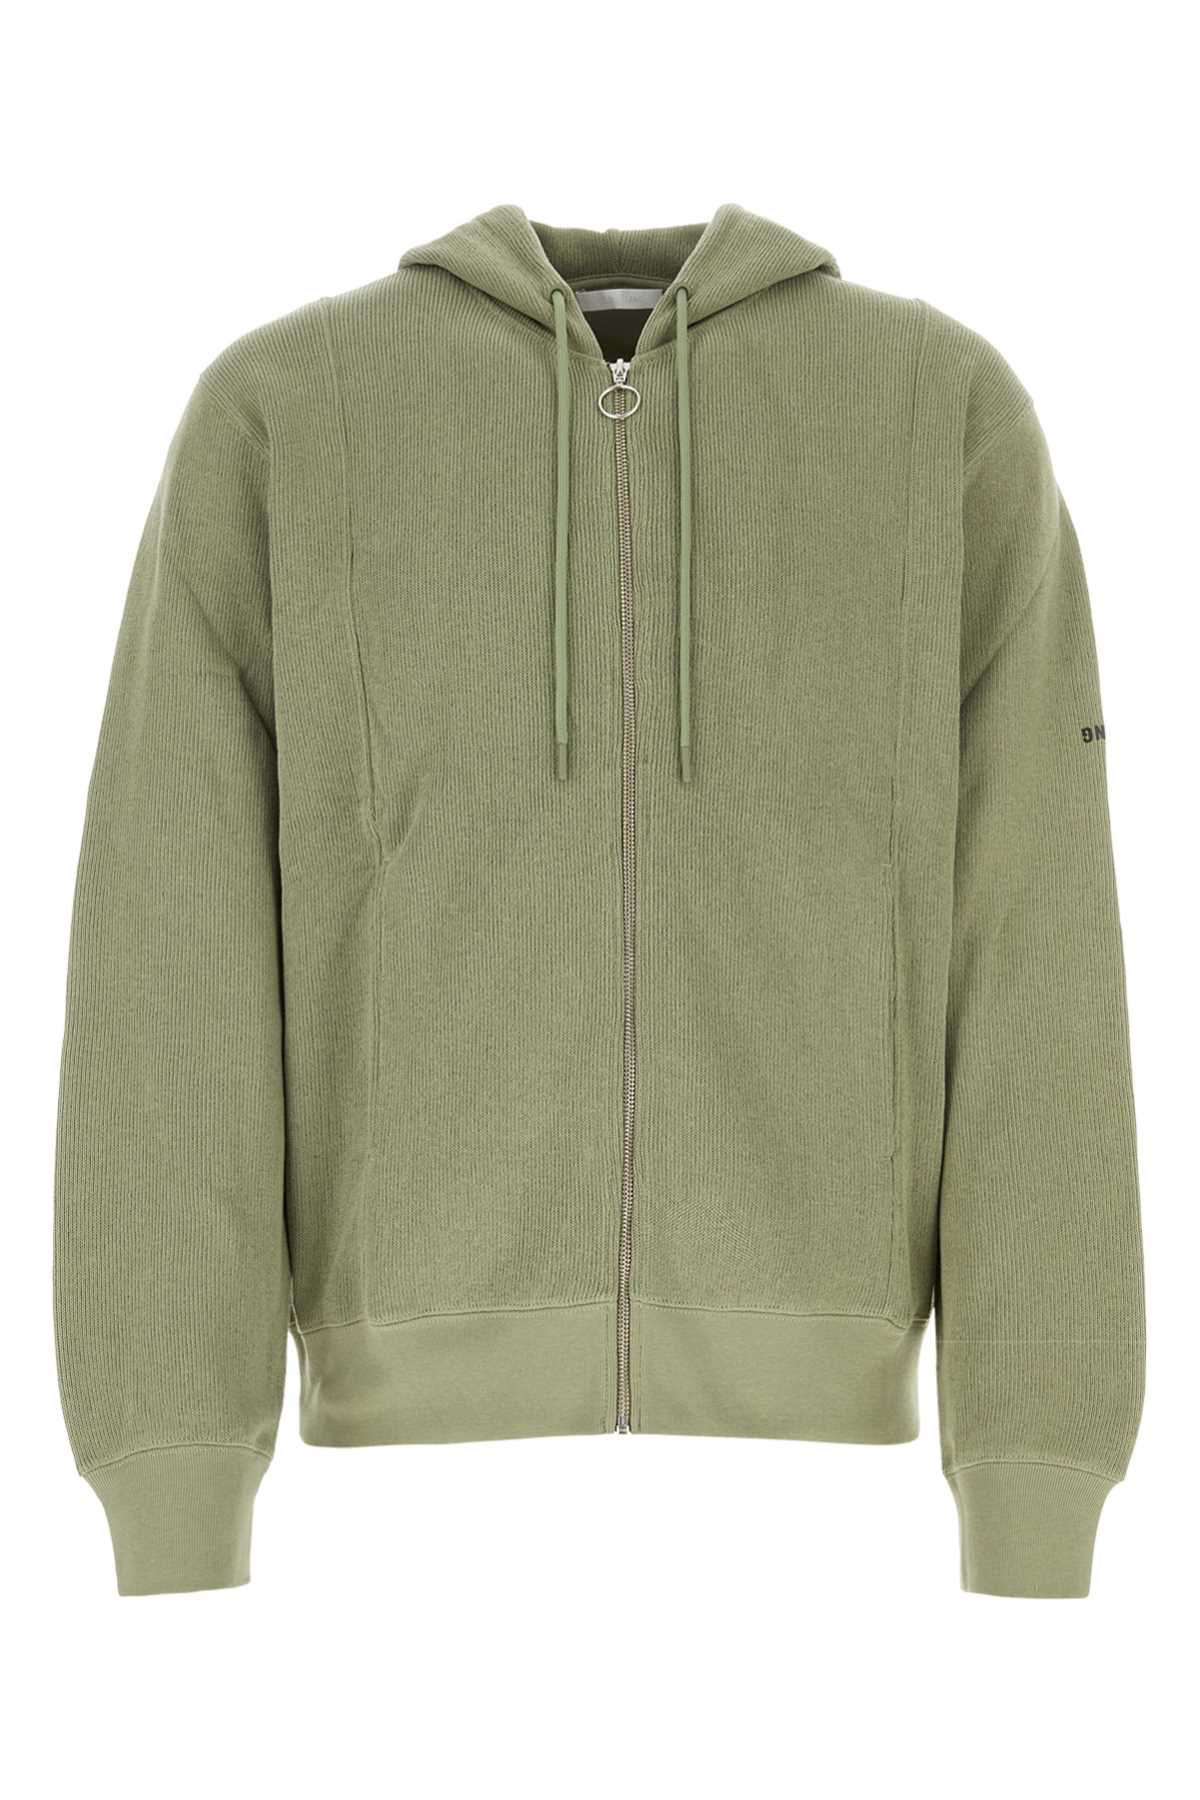 Sage Green Cotton Blend Sweatshirt